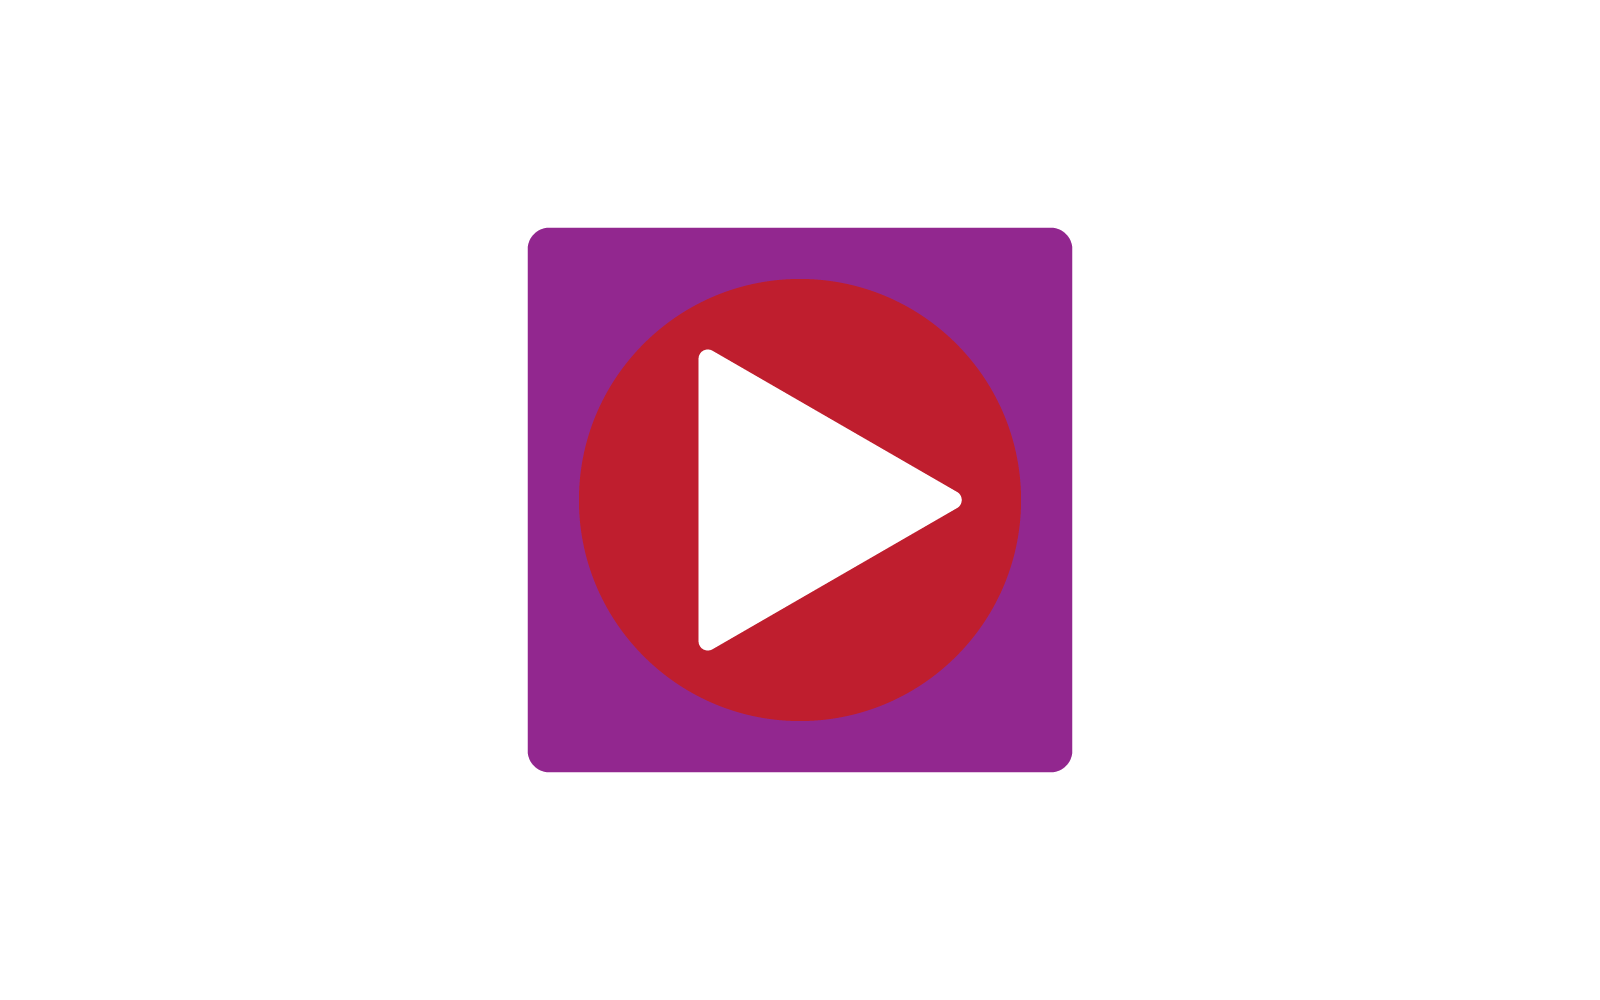 Play button media logo vector flat design Logo Template